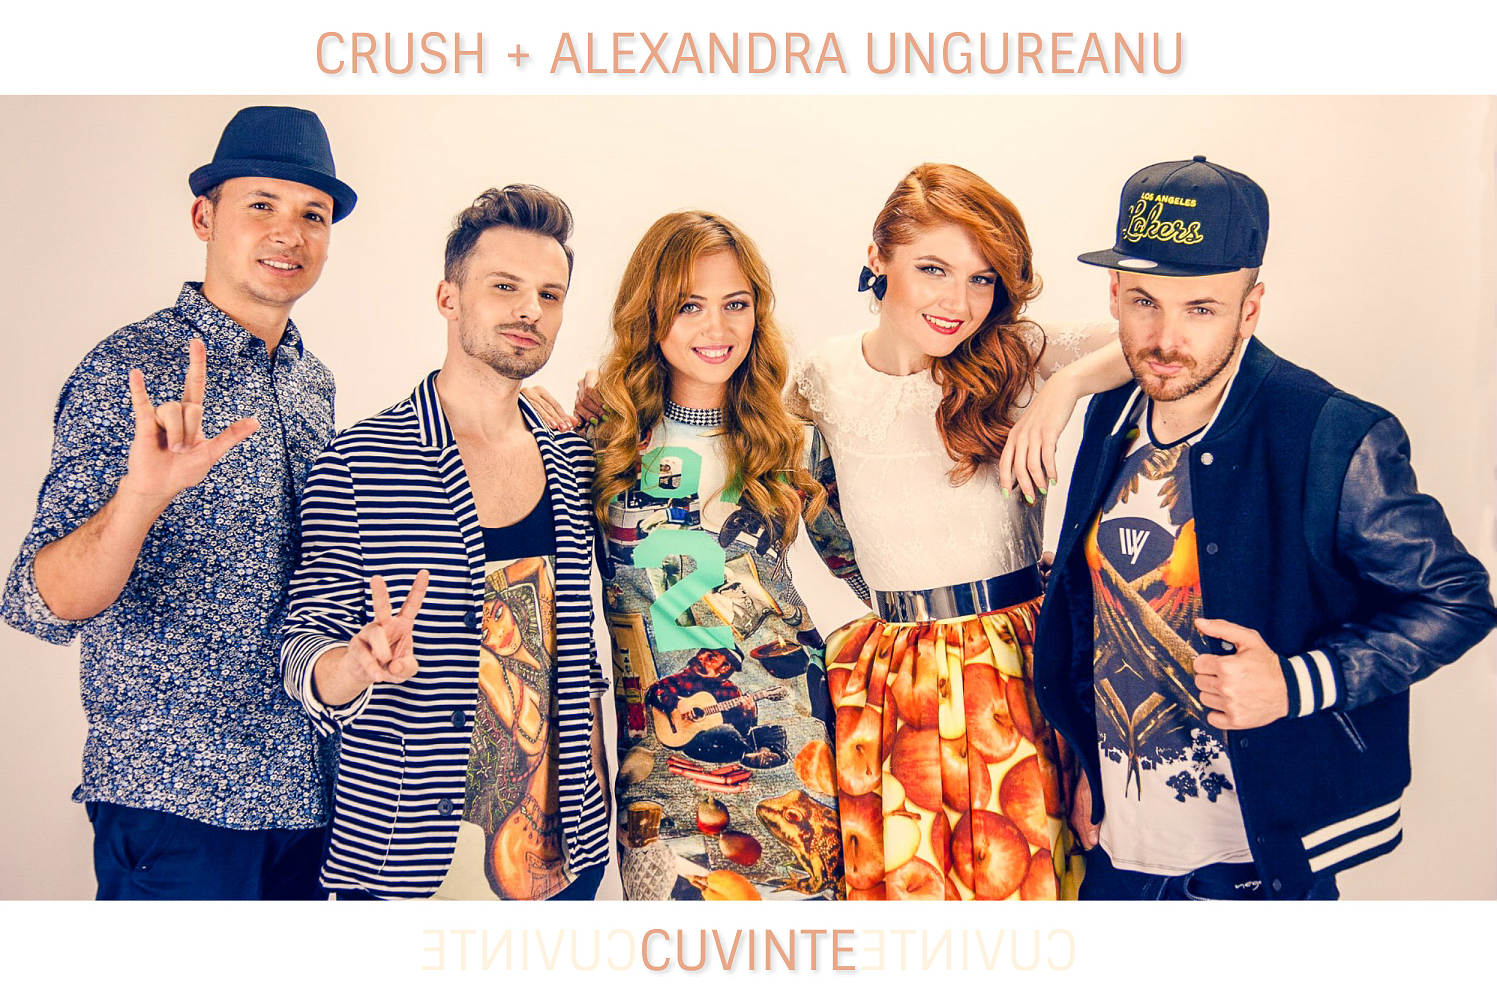 Crush + Alexandra Ungureanu - Cuvinte (premiera videoclip)